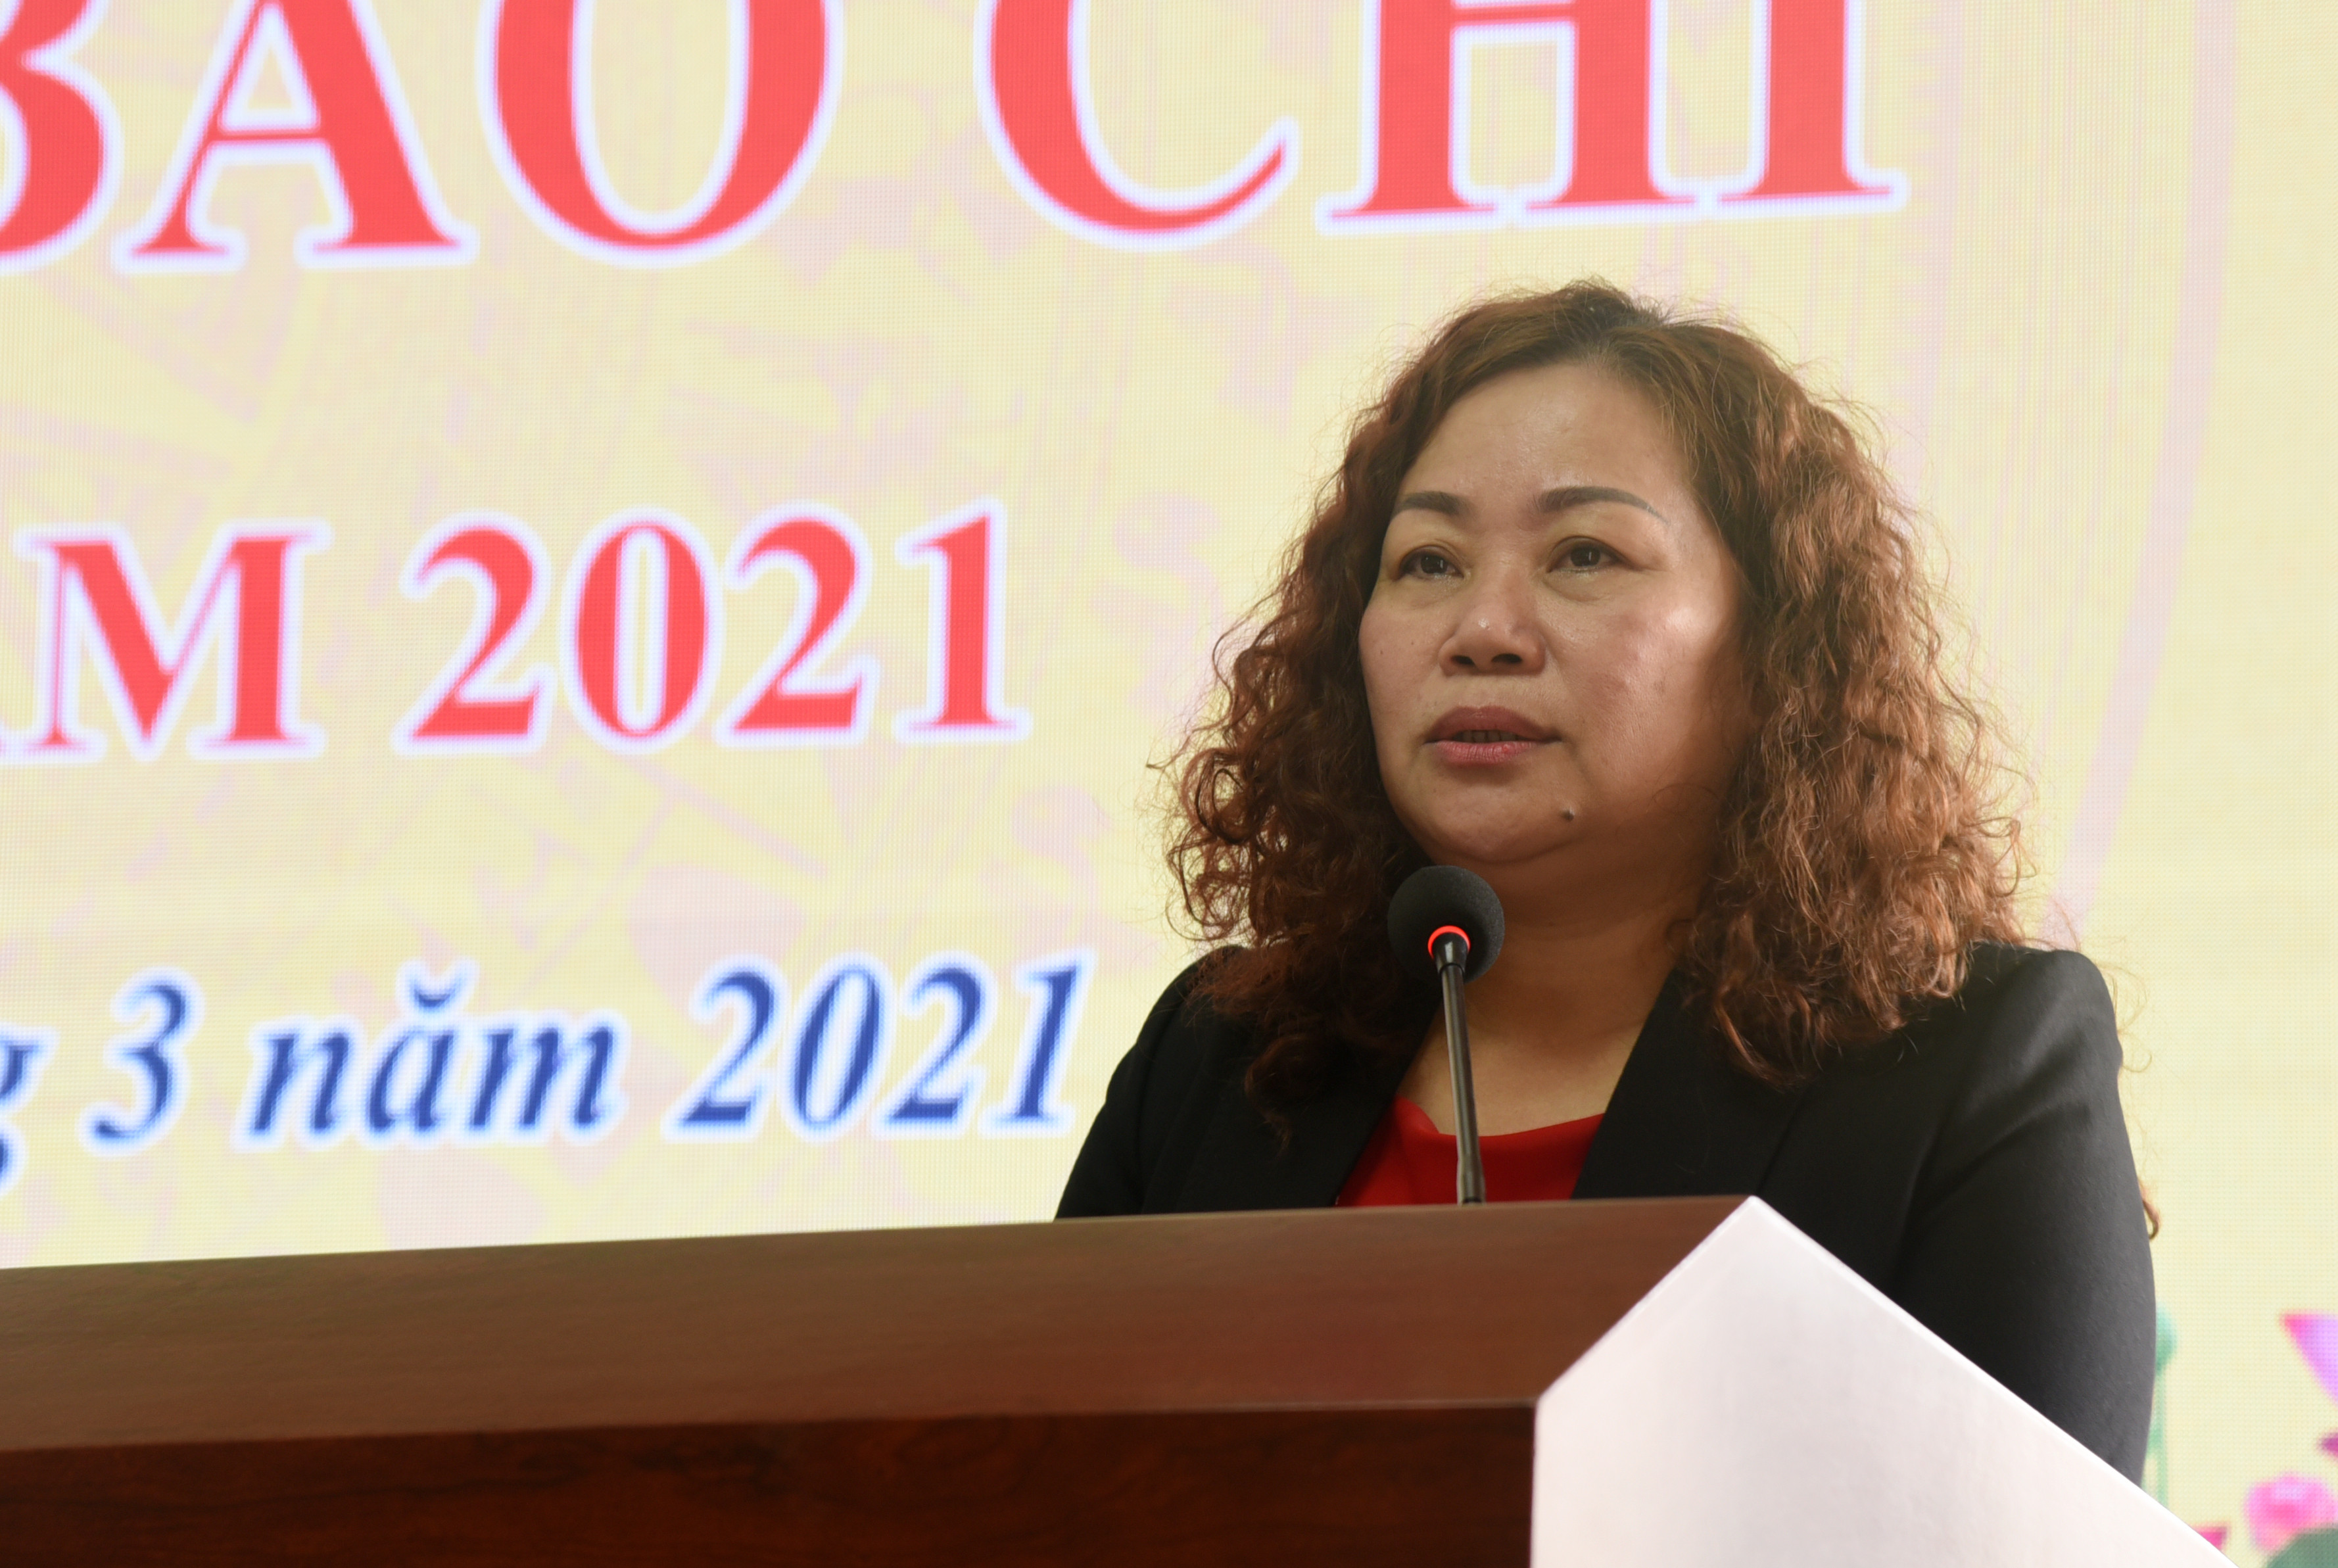 Đồng chí Nguyễn Thị Thu Hường - Ủy viên Ban Thường vụ, Trưởng Ban Tuyên giáo Tỉnh ủy định hướng nội dung tuyên truyền tháng 3/2021. Ảnh: Thu Giang